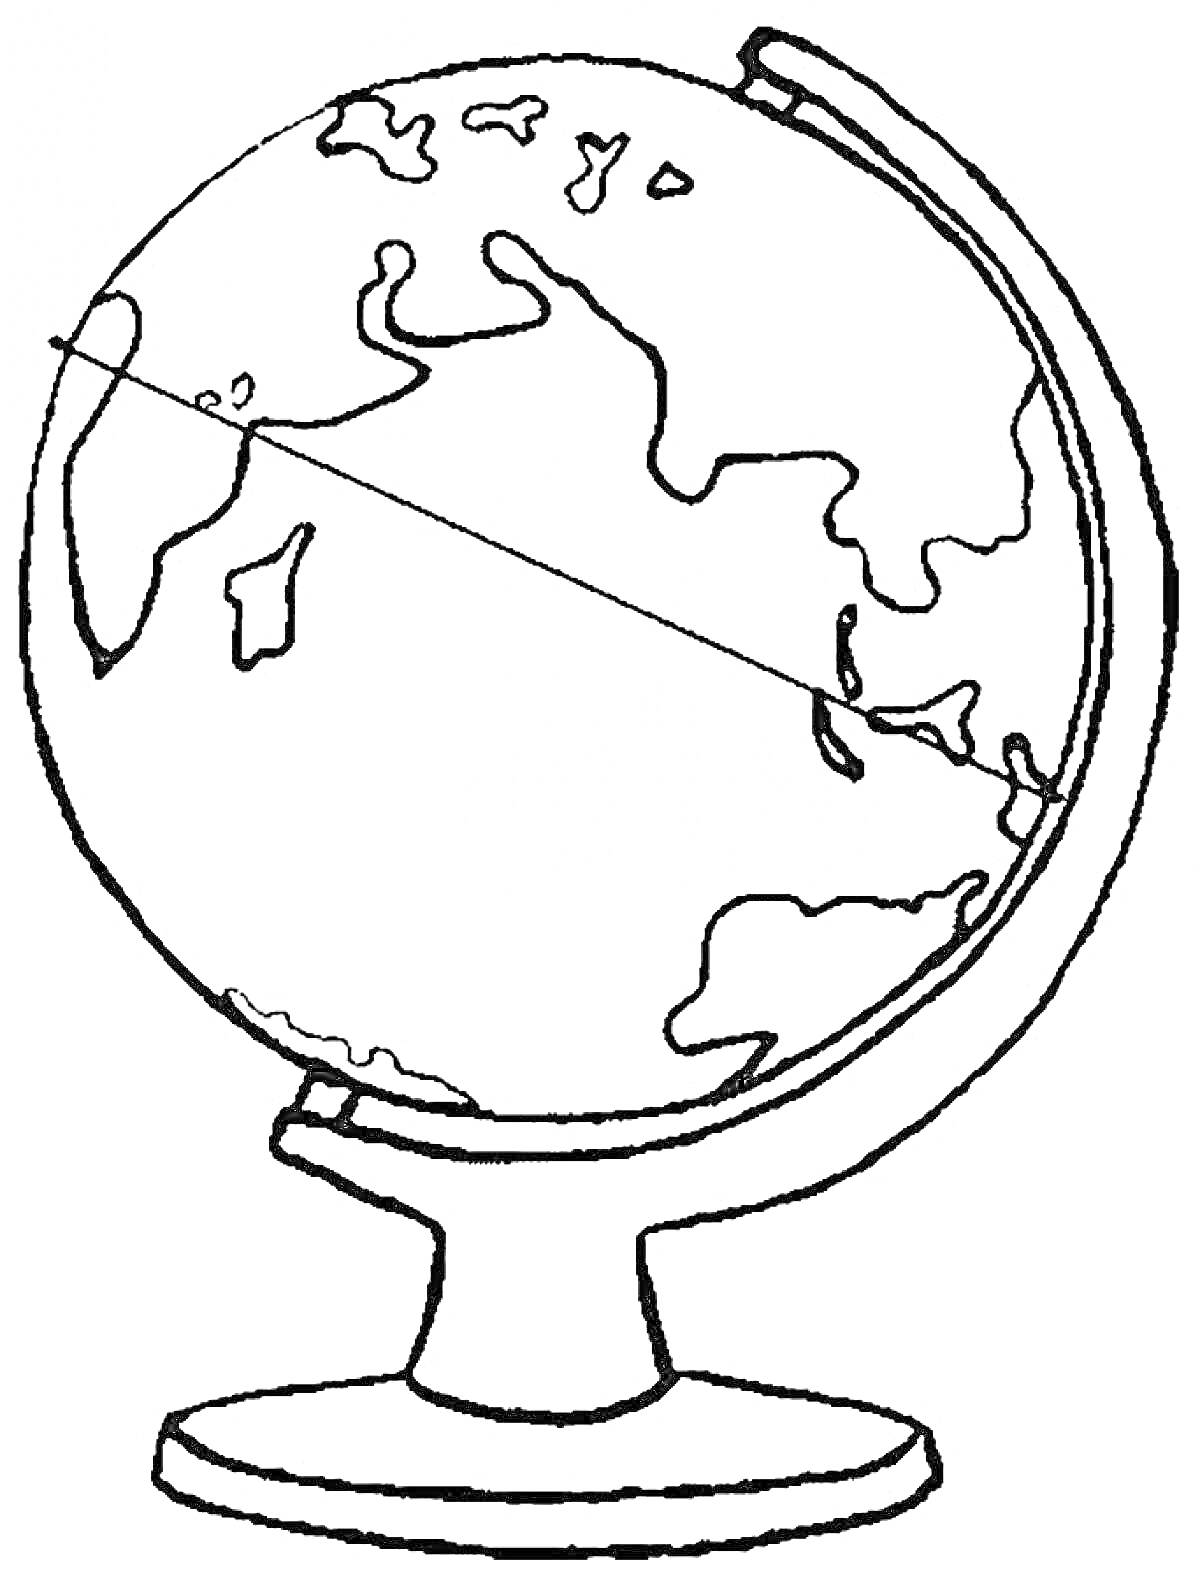 Раскраска Глобус на подставке с изображением континентов и меридиана